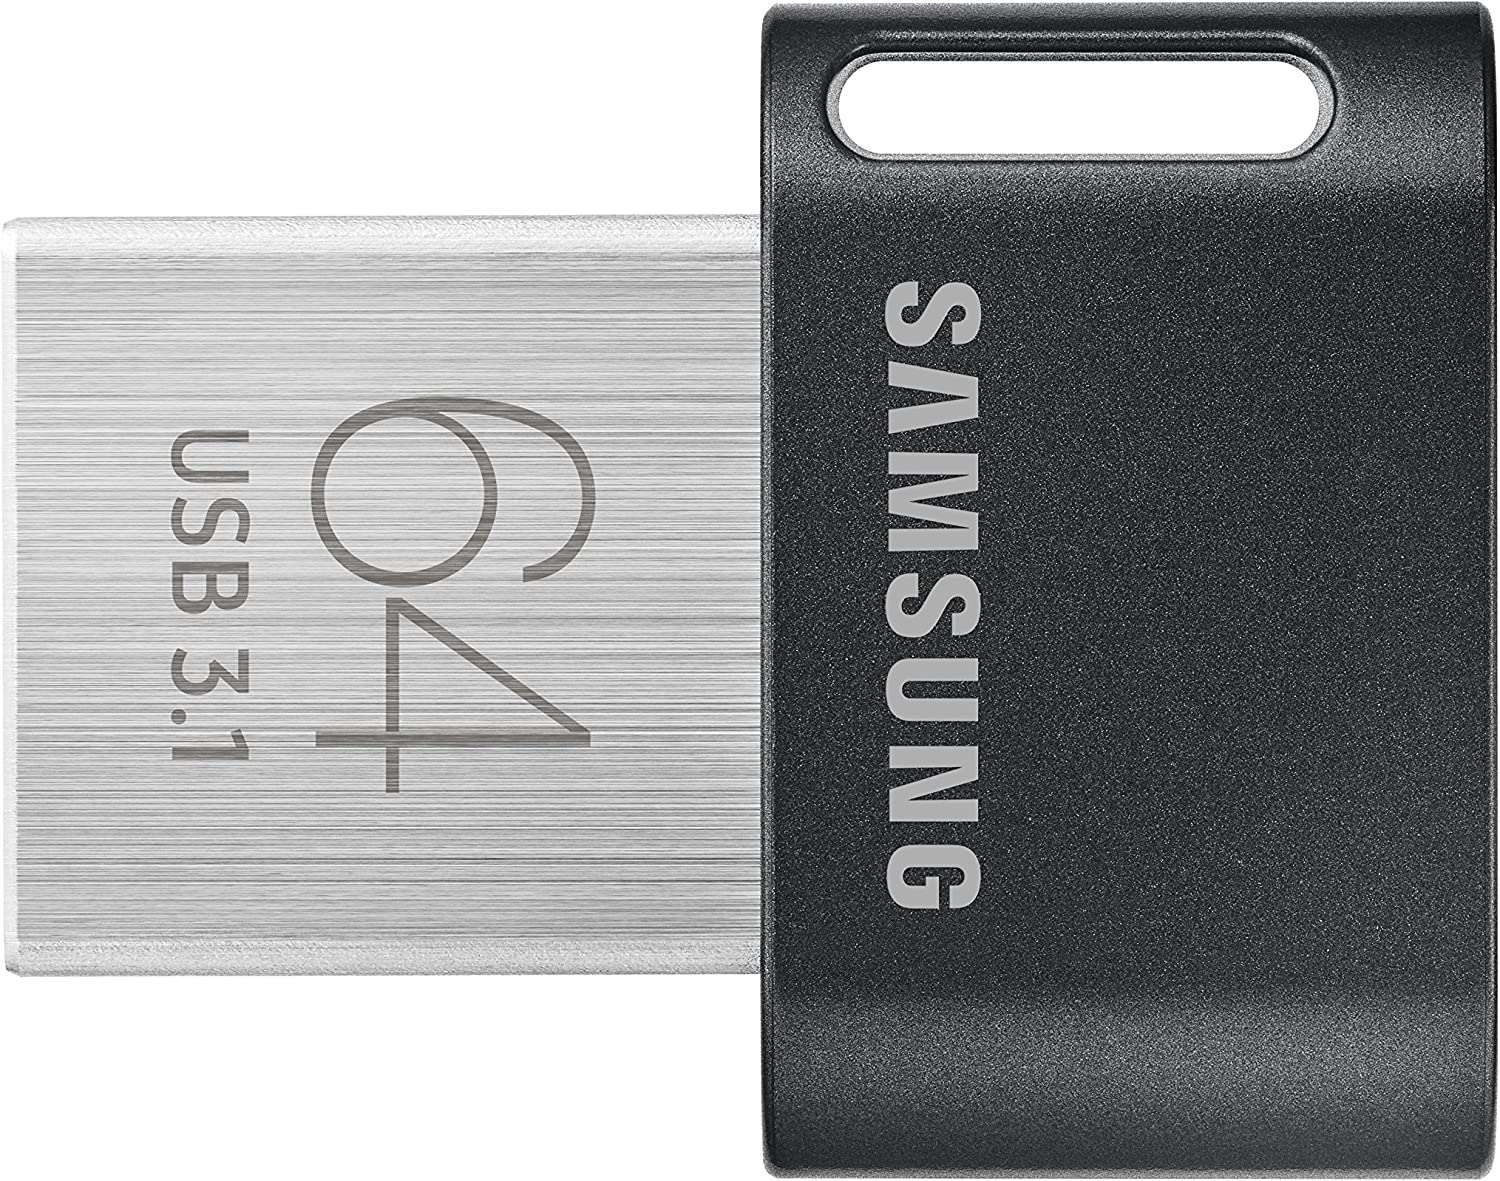 SAMSUNG MUF-AB/APC FIT Plus  - 300MB/s USB 3.1 Flash Drive, Black/Sliver